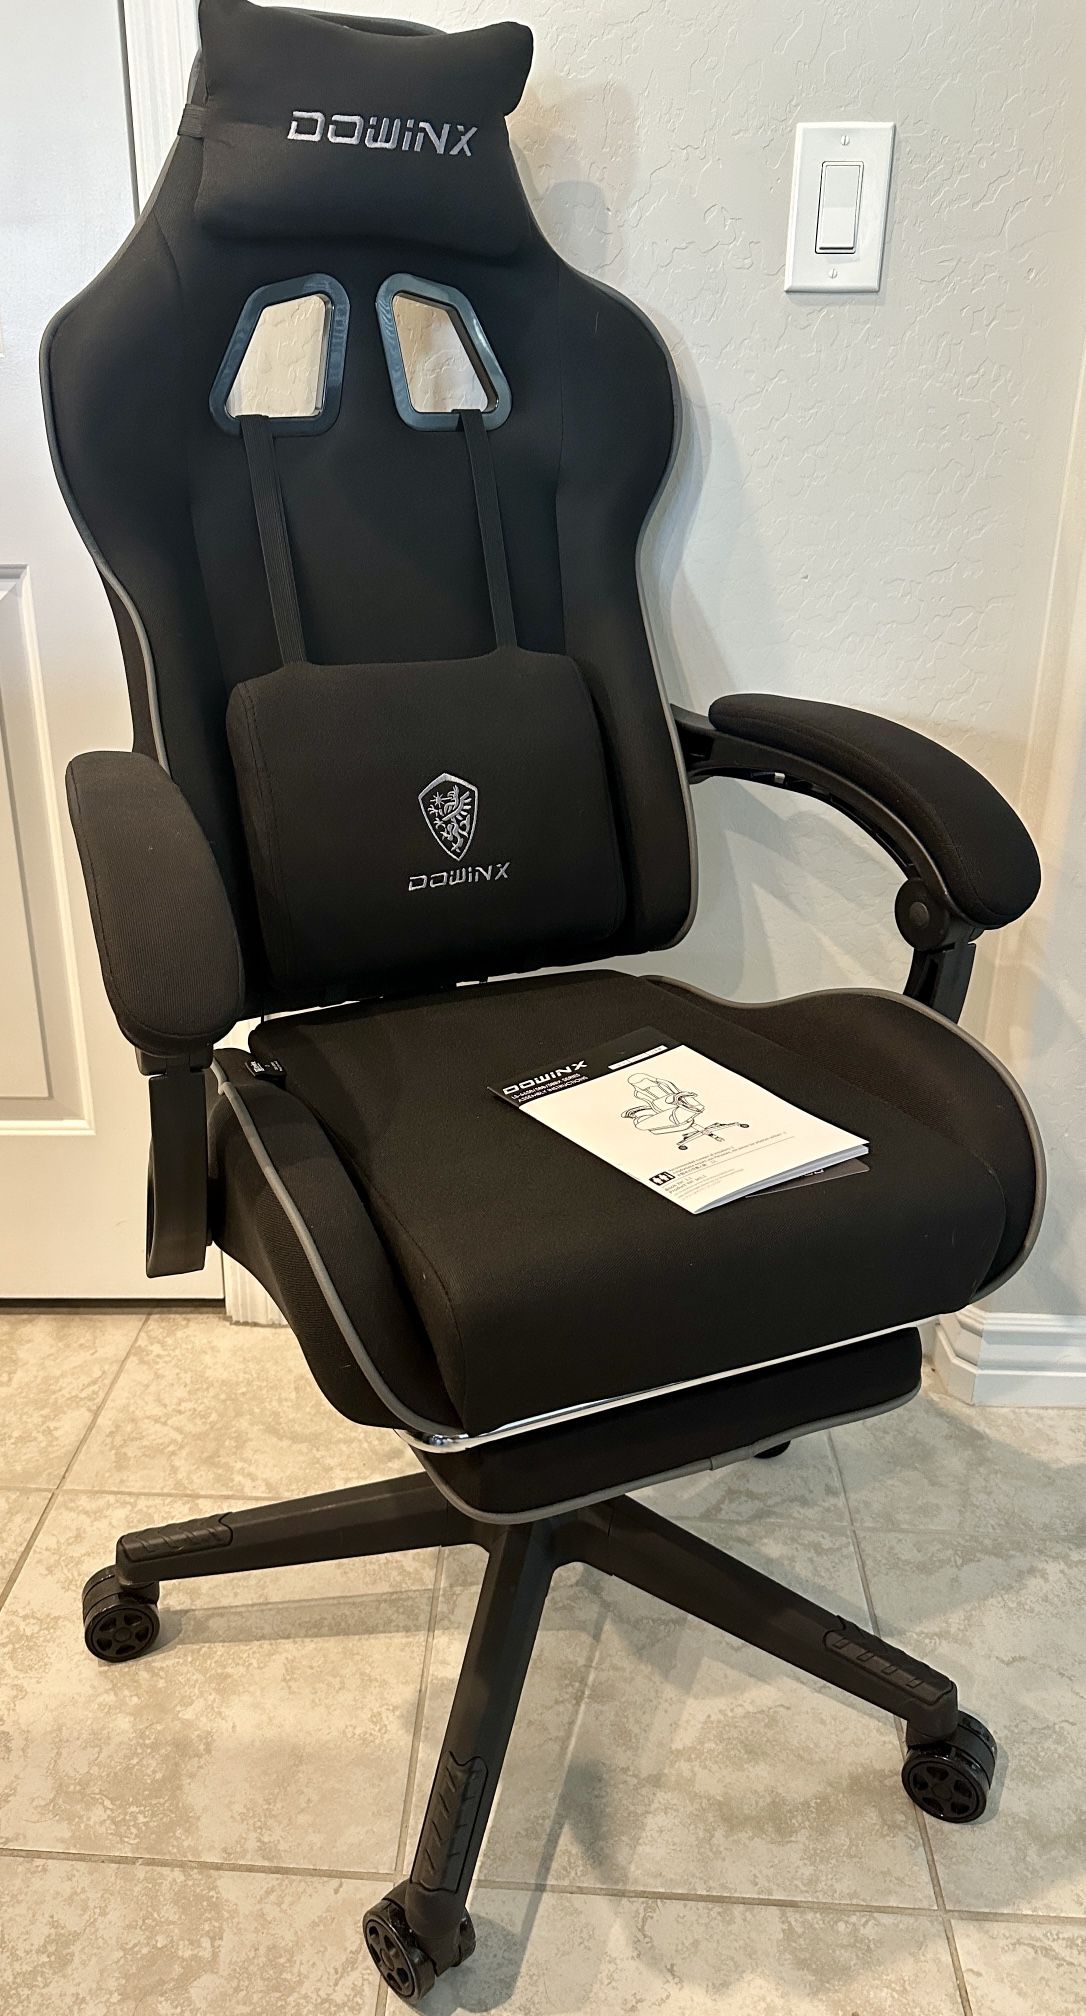 New Dowinx Gaming Chair - Ergonomic